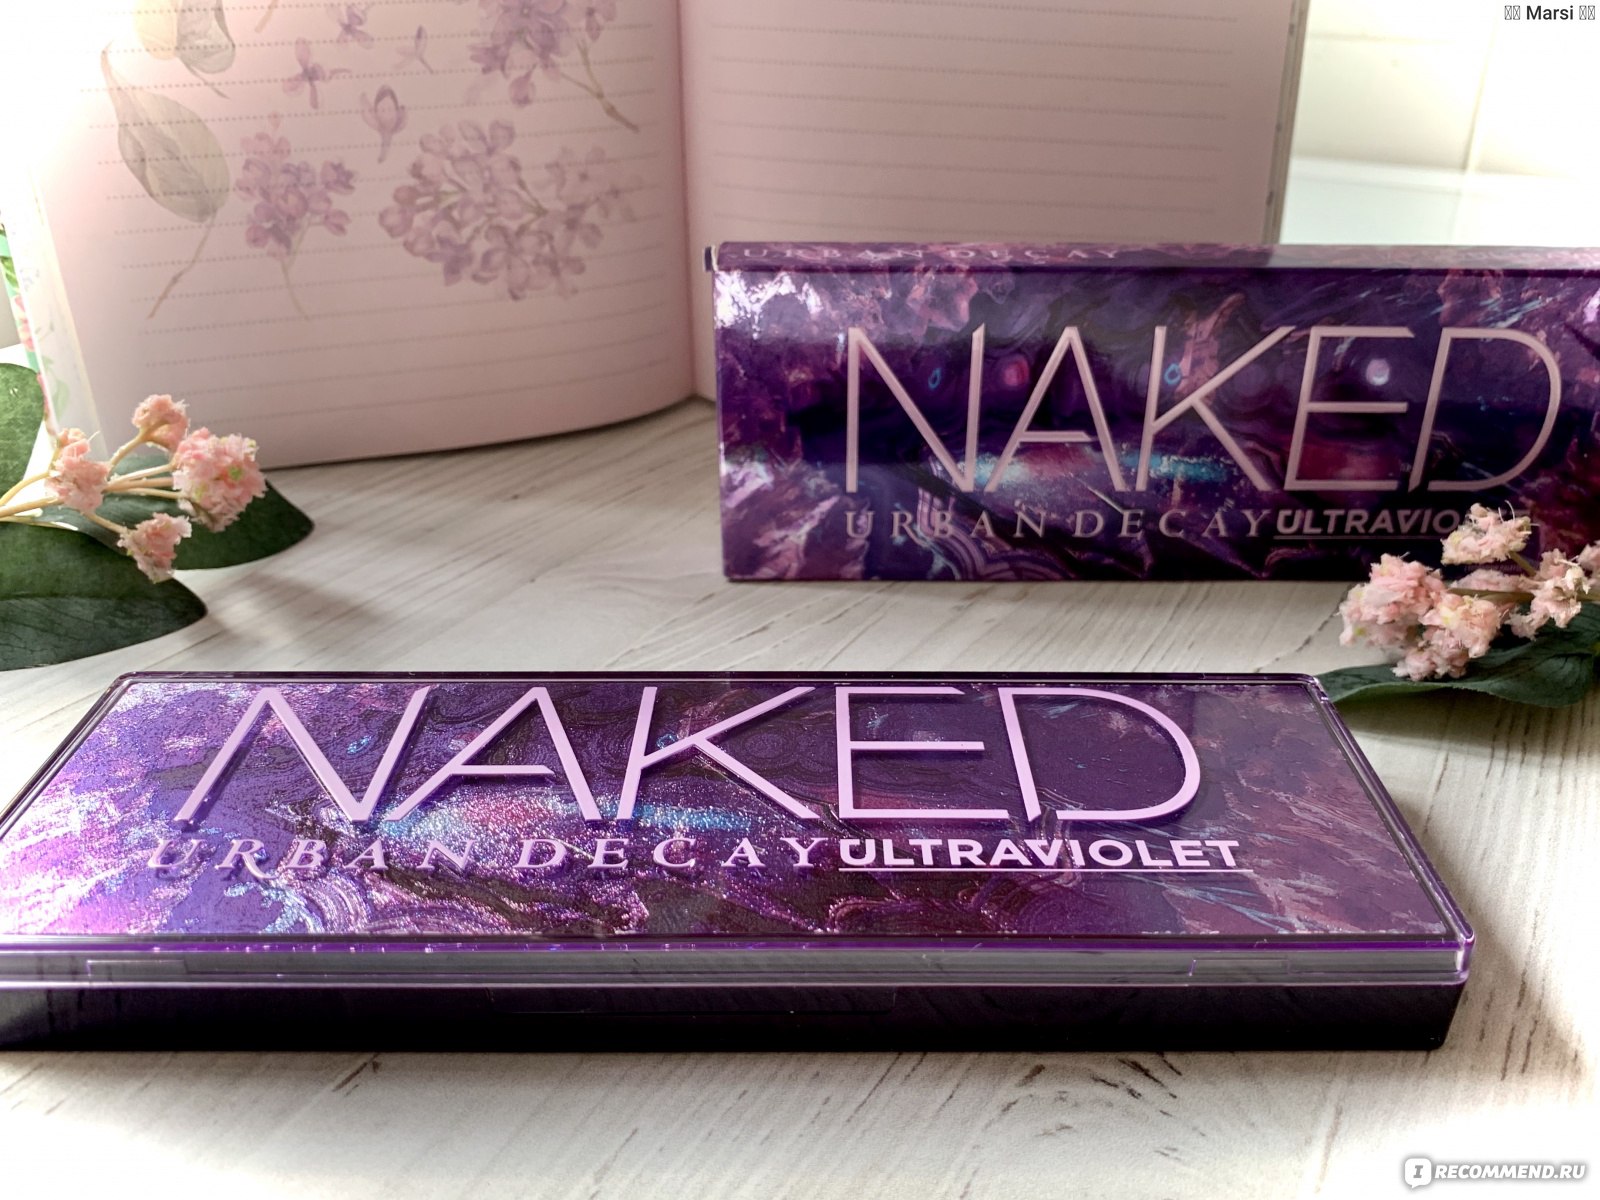 Naked Violet